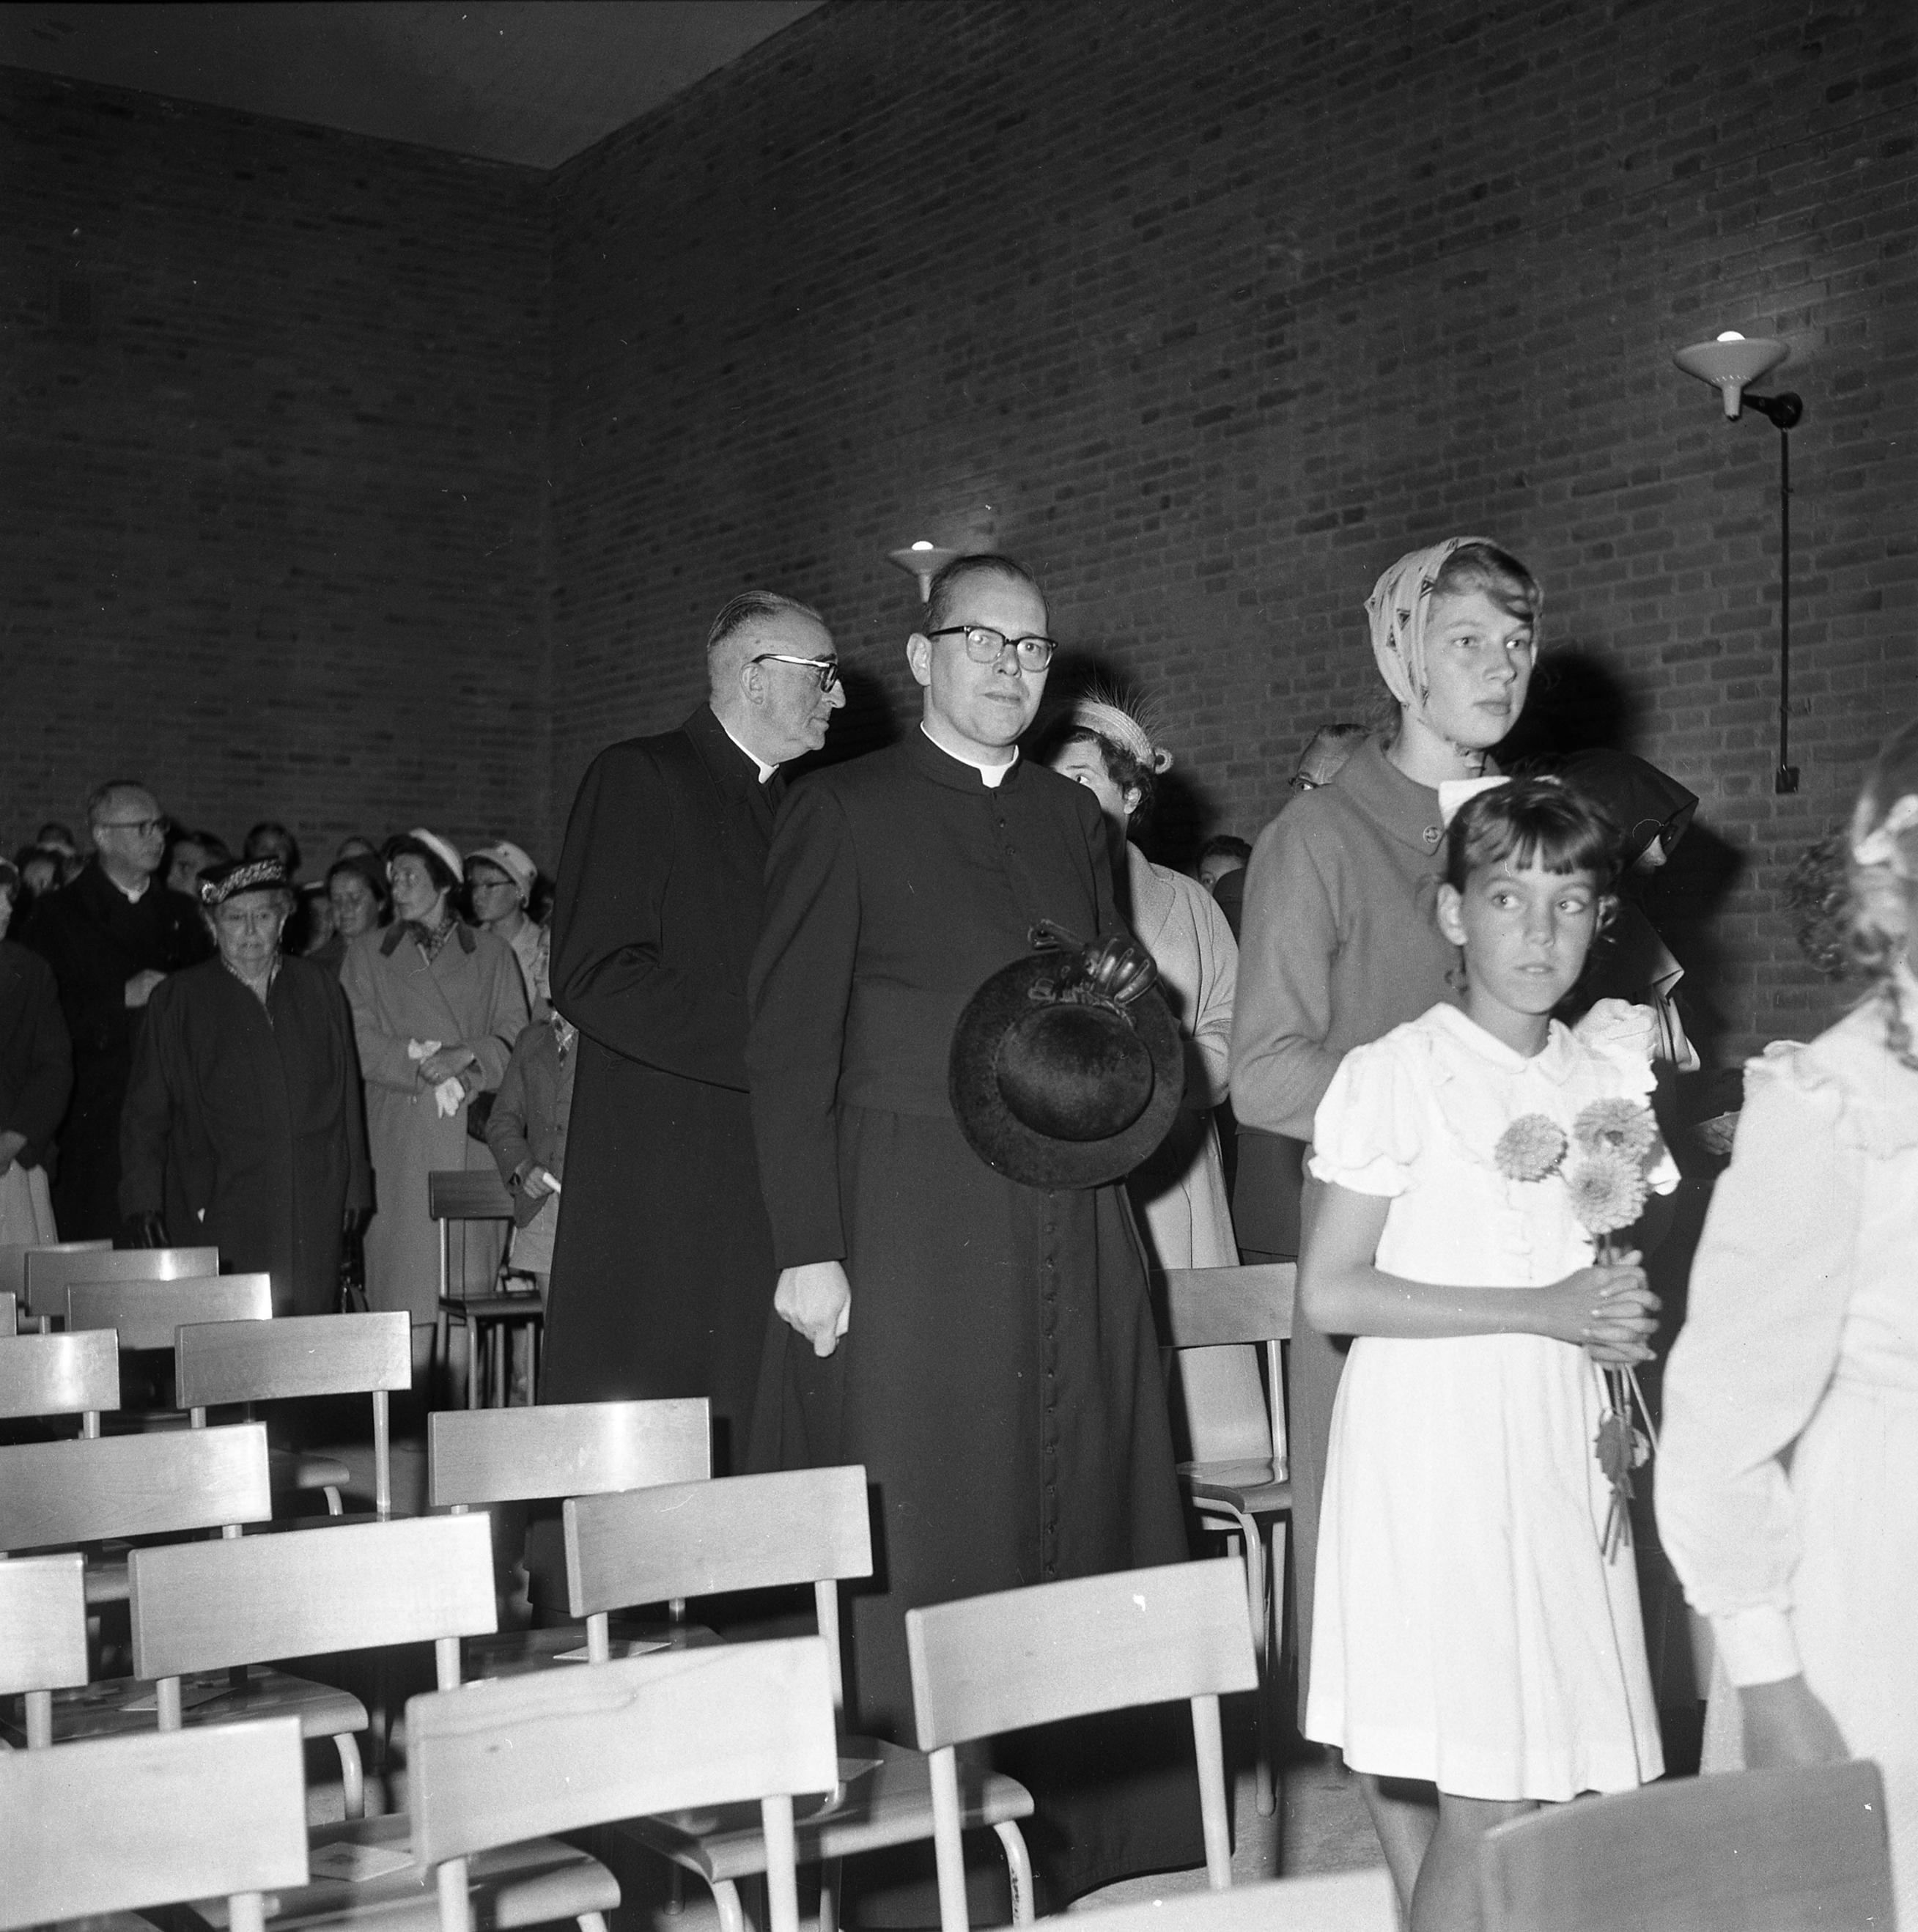 Installatie van H.A.K.M. de Beer als pastoor van de Maria Reginakerk in Boxtel, 21 september 1958 (Fotopersbureau Het Zuiden, collectie BHIC 1901-001237)